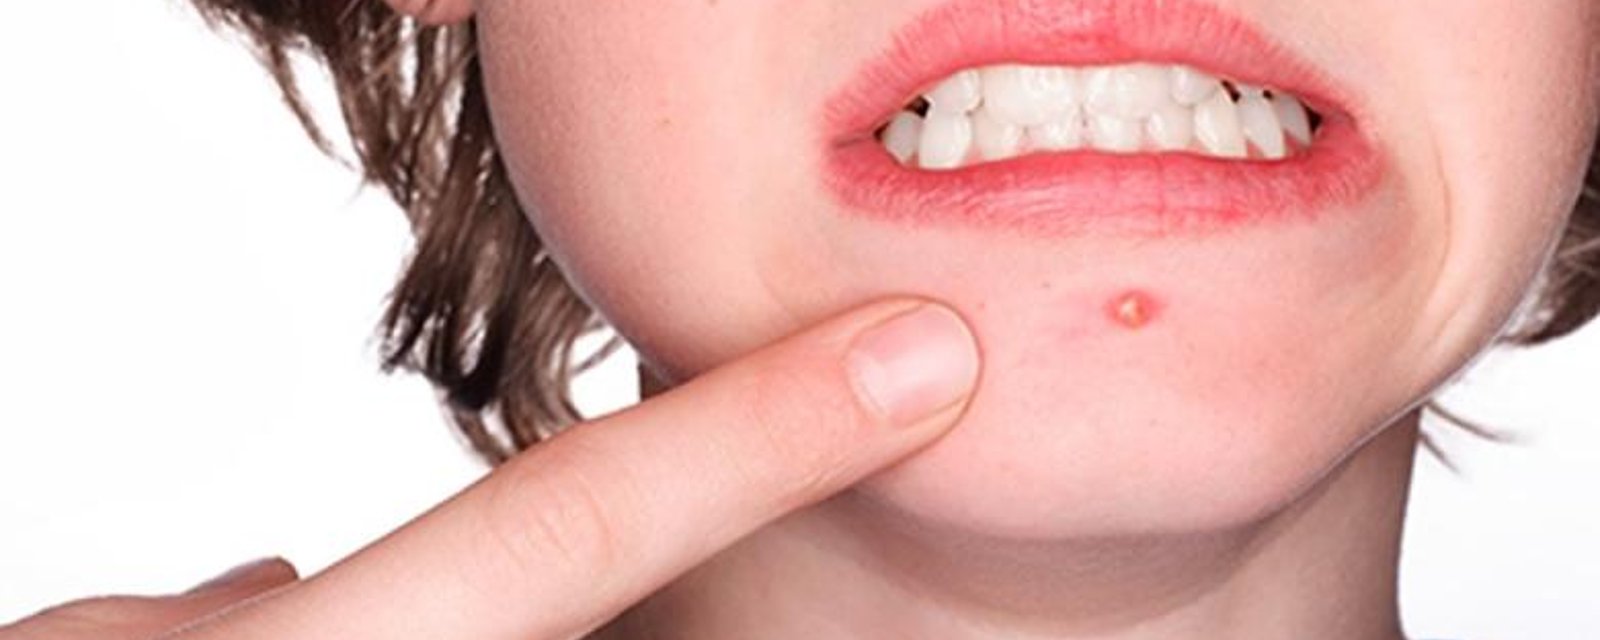 7 choses à éviter de faire si vous avez de l'acné. J'applique le numéro 1 dès maintenant!